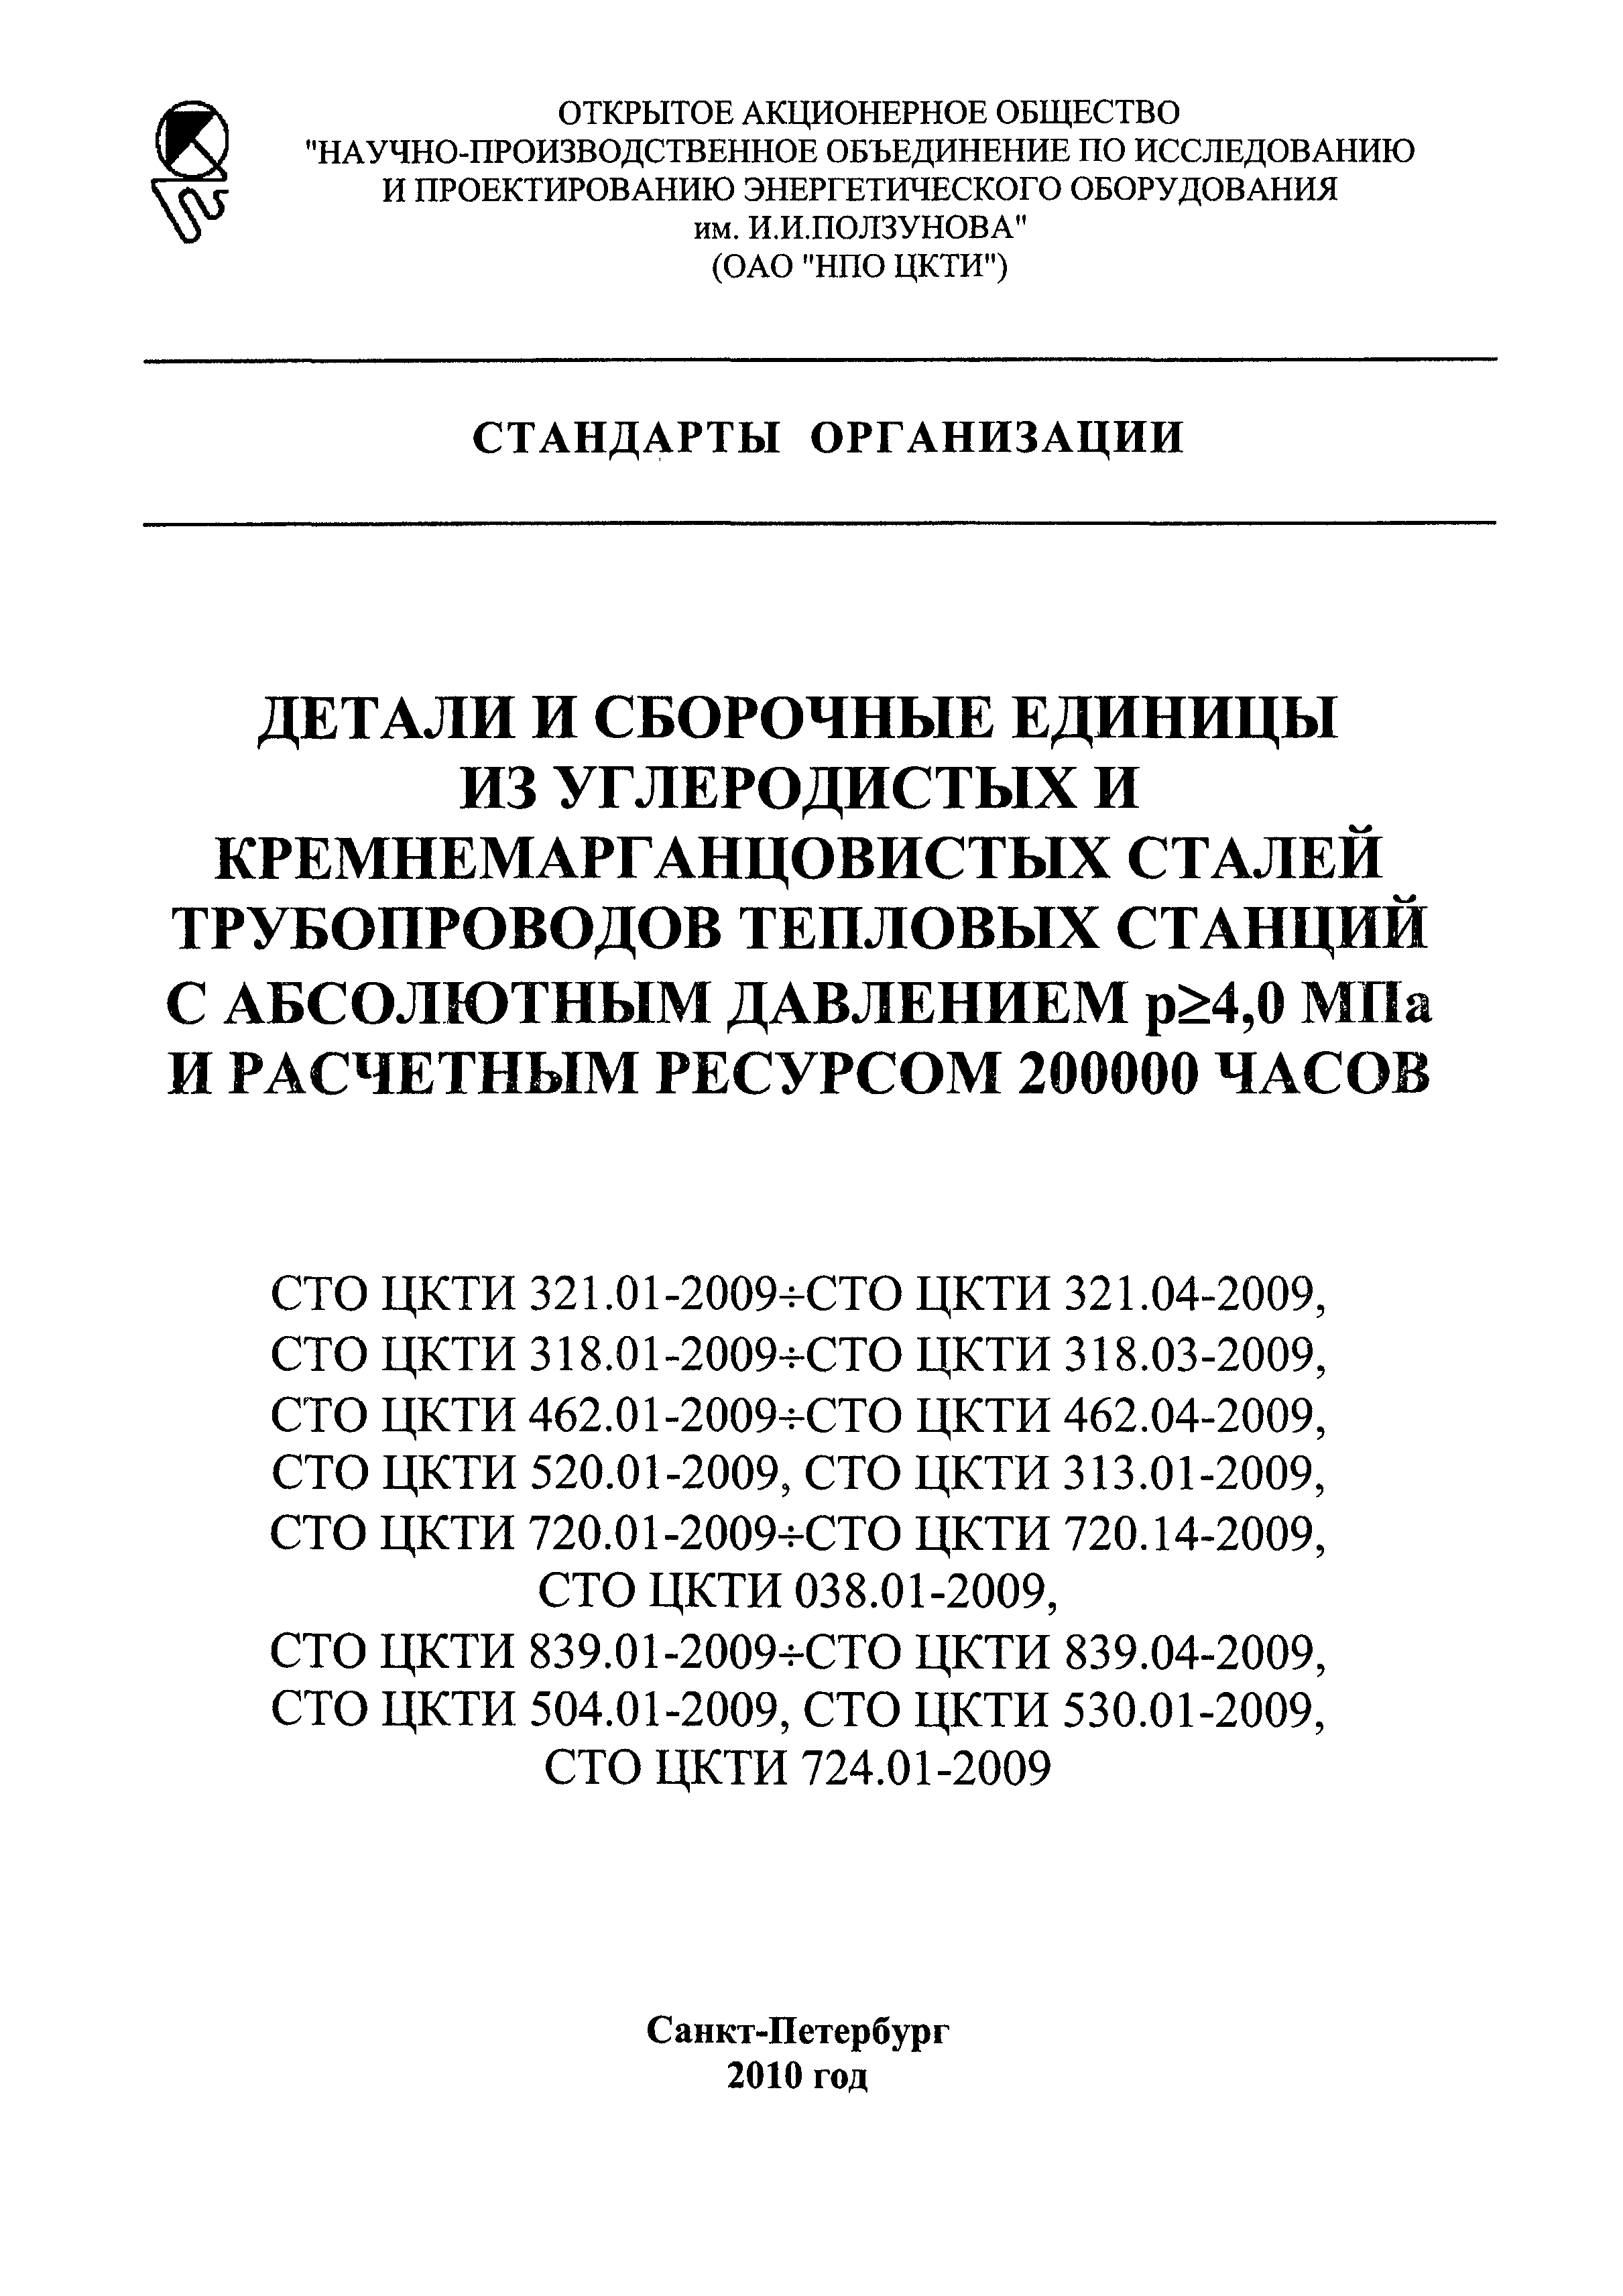 СТО ЦКТИ 839.03-2009